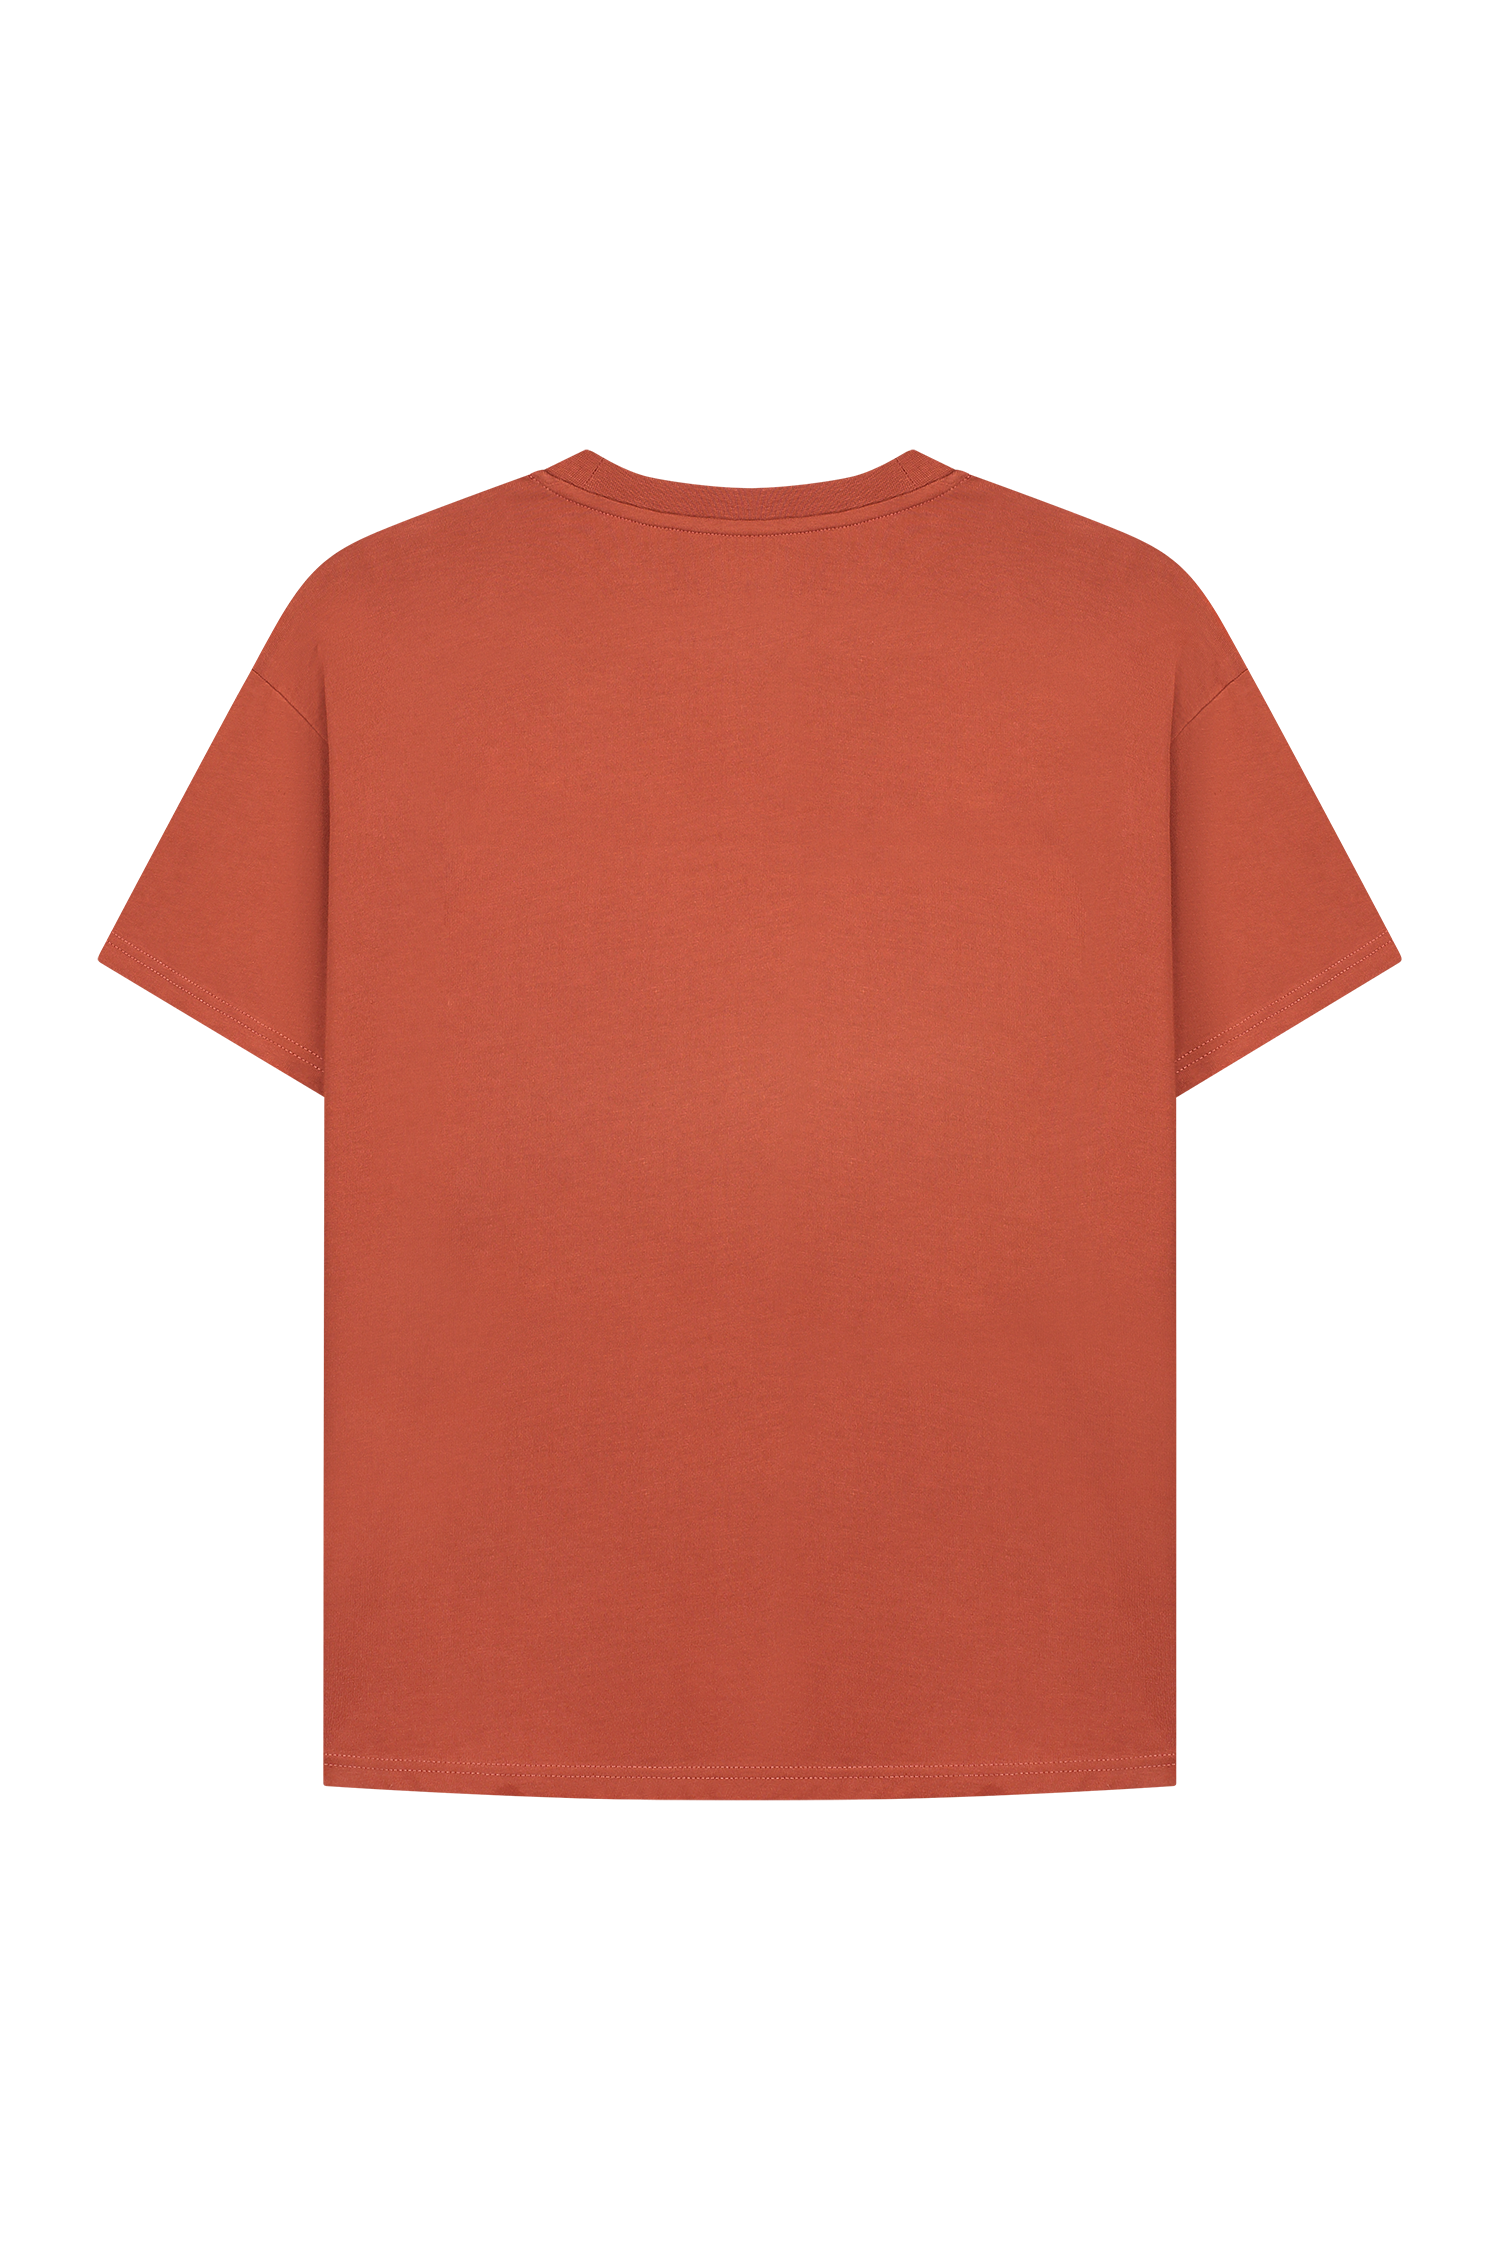 Basic T-shirt burned red